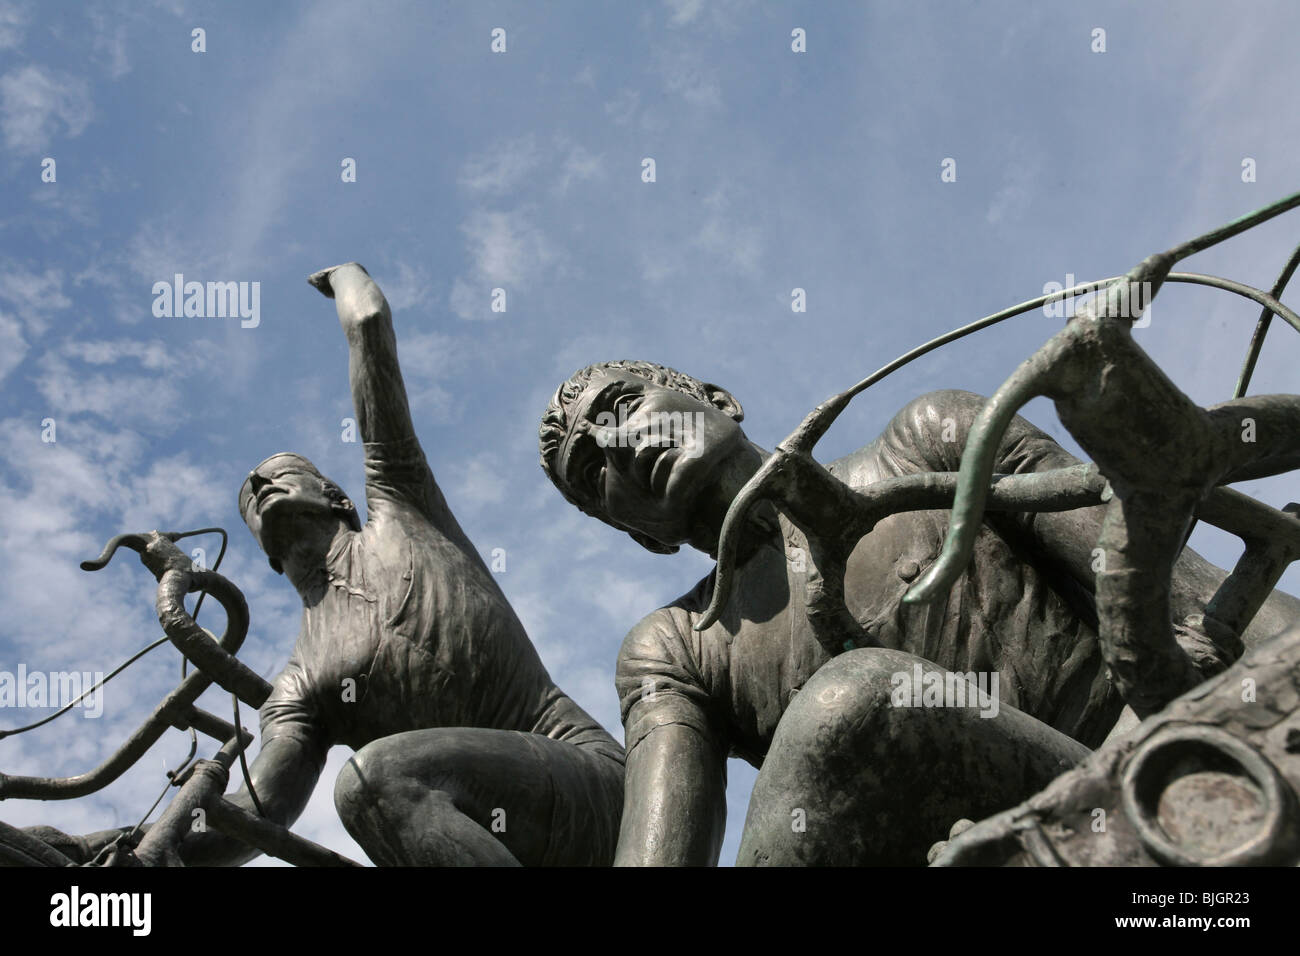 Bild von zwei Bronzestatuen von Radfahrern, Sieg und Niederlage bedeuten. Gedenkstätten für berühmten italienischen Radfahrer, Toskana, Italien. Stockfoto